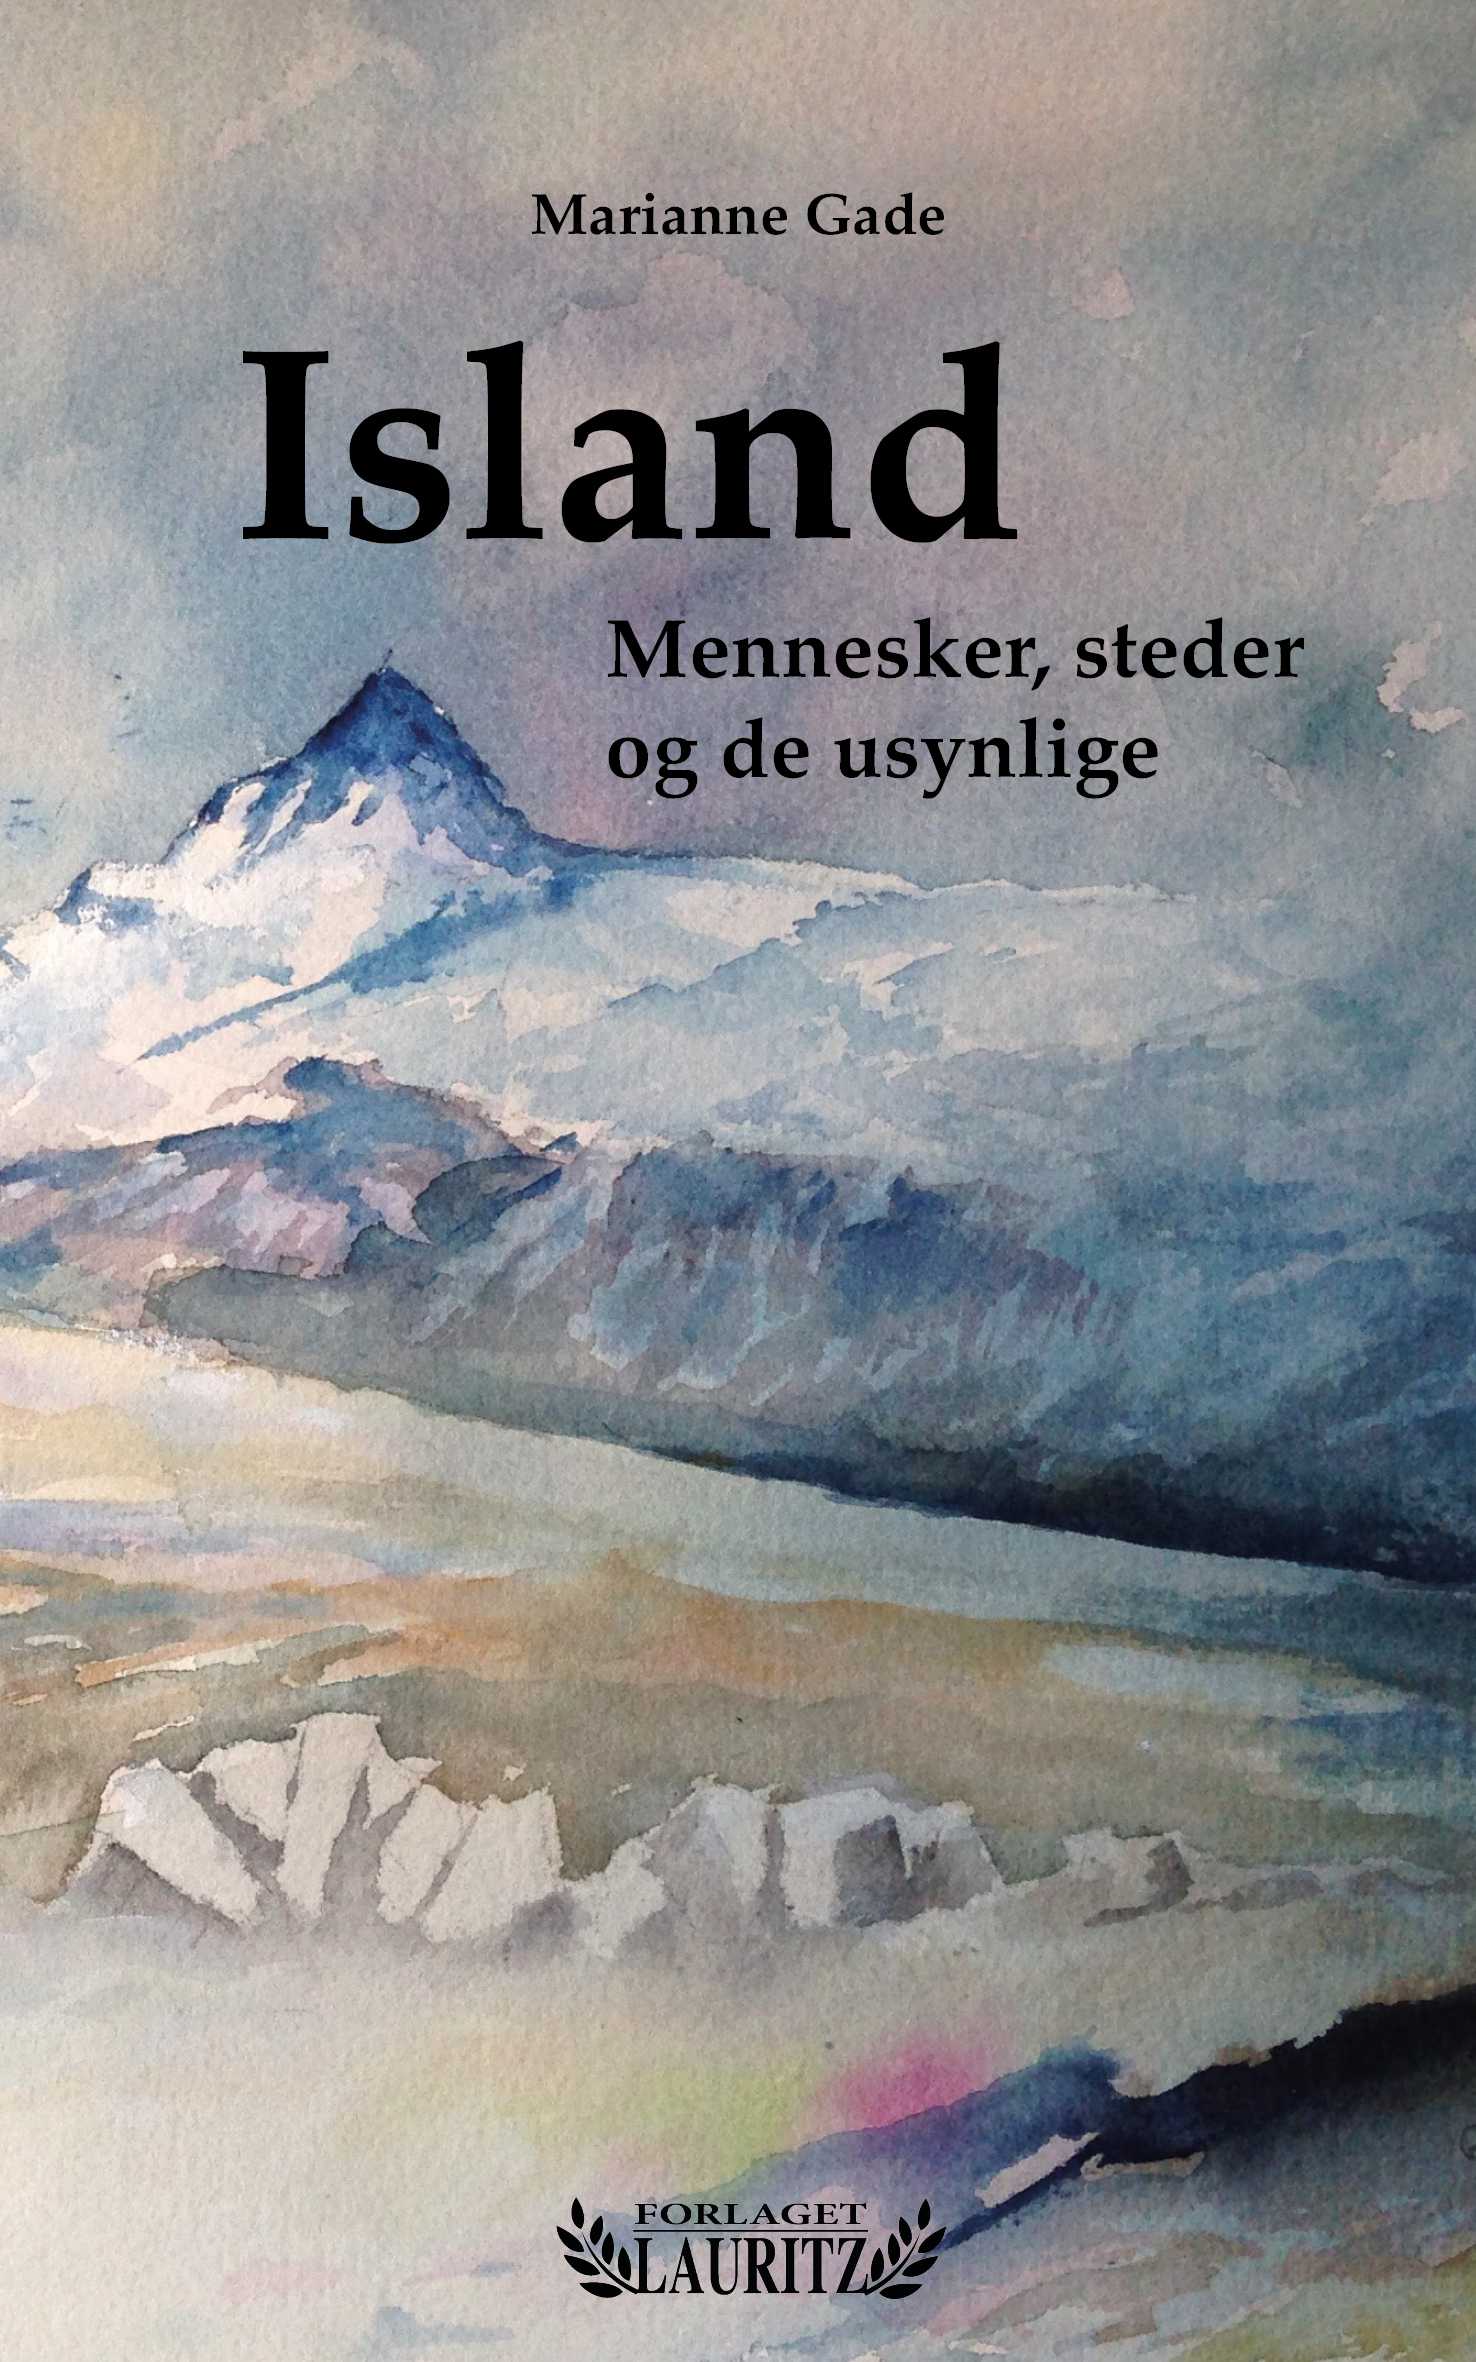 Island - Mennesker, steder og de usynlige